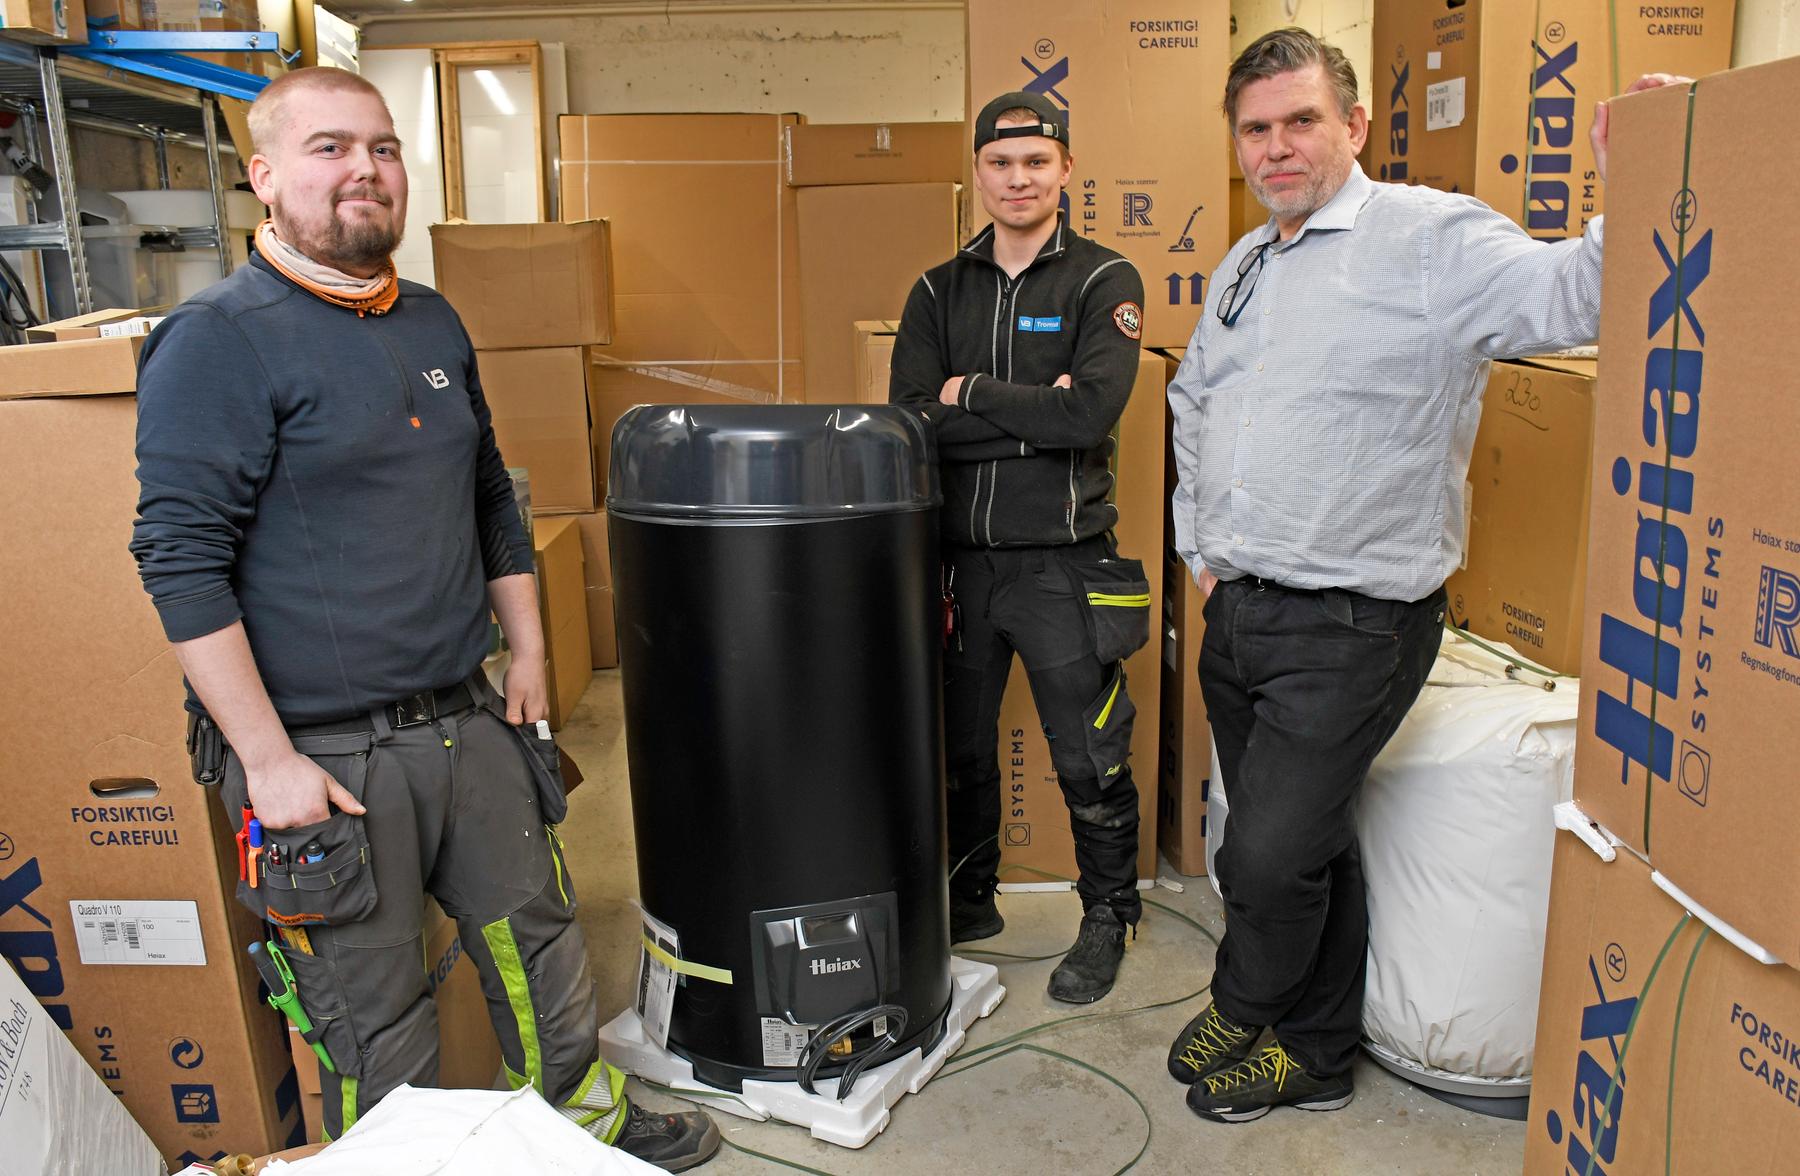 Rørlegger Alexander Antonsen, lærling Sander Karlsen og daglig leder Per Olsen i Høytrykksvakta med en smart varmtvannstank som vil bidra til å redusere forbruk og strømregninger. Høytrykksvakta er en del av rørleggerkjeden VB.​​​​‌﻿‍﻿​‍​‍‌‍﻿﻿‌﻿​‍‌‍‍‌‌‍‌﻿‌‍‍‌‌‍﻿‍​‍​‍​﻿‍‍​‍​‍‌﻿​﻿‌‍​‌‌‍﻿‍‌‍‍‌‌﻿‌​‌﻿‍‌​‍﻿‍‌‍‍‌‌‍﻿﻿​‍​‍​‍﻿​​‍​‍‌‍‍​‌﻿​‍‌‍‌‌‌‍‌‍​‍​‍​﻿‍‍​‍​‍‌‍‍​‌﻿‌​‌﻿‌​‌﻿​​‌﻿​﻿​﻿‍‍​‍﻿﻿​‍﻿﻿‌‍‍‌‌﻿​﻿‌‍‍​‌‍​‌‌﻿‌‍‌﻿​﻿‌‍‍﻿‌﻿​‍‌‍​‌‌‍‌‍‌﻿‌​​‍﻿‍‌﻿​﻿‌‍​‌‌‍﻿‍‌‍‍‌‌﻿‌​‌﻿‍‌​‍﻿‍‌﻿​﻿‌﻿‌​‌﻿‌‌‌‍‌​‌‍‍‌‌‍﻿﻿​‍﻿﻿‌‍‍‌‌‍﻿‍‌﻿‌​‌‍‌‌‌‍﻿‍‌﻿‌​​‍﻿﻿‌‍‌‌‌‍‌​‌‍‍‌‌﻿‌​​‍﻿﻿‌‍﻿‌‌‍﻿﻿‌‍‌​‌‍‌‌​﻿﻿‌‌﻿​​‌﻿​‍‌‍‌‌‌﻿​﻿‌‍‌‌‌‍﻿‍‌﻿‌​‌‍​‌‌﻿‌​‌‍‍‌‌‍﻿﻿‌‍﻿‍​﻿‍﻿‌‍‍‌‌‍‌​​﻿﻿‌​﻿‍‌​﻿‌​‌‍‌​​﻿​‍​﻿‍‌​﻿​‍​﻿​‌​﻿‍​​‍﻿‌‌‍‌‍‌‍​‍​﻿‌‍‌‍‌‍​‍﻿‌​﻿‌​‌‍​﻿‌‍‌‌​﻿​​​‍﻿‌‌‍​‍​﻿​‌​﻿​​‌‍‌‍​‍﻿‌​﻿‍​​﻿‌​​﻿​​‌‍​‍‌‍‌​‌‍‌‍‌‍‌‌‌‍‌​‌‍​‍​﻿‌﻿​﻿‌‍​﻿‍​​﻿‍﻿‌﻿‌​‌﻿‍‌‌﻿​​‌‍‌‌​﻿﻿‌‌‍​‌‌﻿​‍‌﻿‌​‌‍‍‌‌‍​﻿‌‍﻿​‌‍‌‌​﻿‍﻿‌﻿​​‌‍​‌‌﻿‌​‌‍‍​​﻿﻿‌‌‍‍‌‌‍﻿‌‌‍​‌‌‍‌﻿‌‍‌‌​‍﻿‍‌‍​‌‌‍﻿​‌﻿‌​​﻿﻿﻿‌‍​‍‌‍​‌‌﻿​﻿‌‍‌‌‌‌‌‌‌﻿​‍‌‍﻿​​﻿﻿‌‌‍‍​‌﻿‌​‌﻿‌​‌﻿​​‌﻿​﻿​‍‌‌​﻿​﻿‌​​‌​‍‌‌​﻿​‍‌​‌‍​‍‌‌​﻿​‍‌​‌‍‌‍‍‌‌﻿​﻿‌‍‍​‌‍​‌‌﻿‌‍‌﻿​﻿‌‍‍﻿‌﻿​‍‌‍​‌‌‍‌‍‌﻿‌​​‍﻿‍‌﻿​﻿‌‍​‌‌‍﻿‍‌‍‍‌‌﻿‌​‌﻿‍‌​‍﻿‍‌﻿​﻿‌﻿‌​‌﻿‌‌‌‍‌​‌‍‍‌‌‍﻿﻿​‍‌‍‌‍‍‌‌‍‌​​﻿﻿‌​﻿‍‌​﻿‌​‌‍‌​​﻿​‍​﻿‍‌​﻿​‍​﻿​‌​﻿‍​​‍﻿‌‌‍‌‍‌‍​‍​﻿‌‍‌‍‌‍​‍﻿‌​﻿‌​‌‍​﻿‌‍‌‌​﻿​​​‍﻿‌‌‍​‍​﻿​‌​﻿​​‌‍‌‍​‍﻿‌​﻿‍​​﻿‌​​﻿​​‌‍​‍‌‍‌​‌‍‌‍‌‍‌‌‌‍‌​‌‍​‍​﻿‌﻿​﻿‌‍​﻿‍​​‍‌‍‌﻿‌​‌﻿‍‌‌﻿​​‌‍‌‌​﻿﻿‌‌‍​‌‌﻿​‍‌﻿‌​‌‍‍‌‌‍​﻿‌‍﻿​‌‍‌‌​‍‌‍‌﻿​​‌‍​‌‌﻿‌​‌‍‍​​﻿﻿‌‌‍‍‌‌‍﻿‌‌‍​‌‌‍‌﻿‌‍‌‌​‍﻿‍‌‍​‌‌‍﻿​‌﻿‌​​‍​‍‌﻿﻿‌